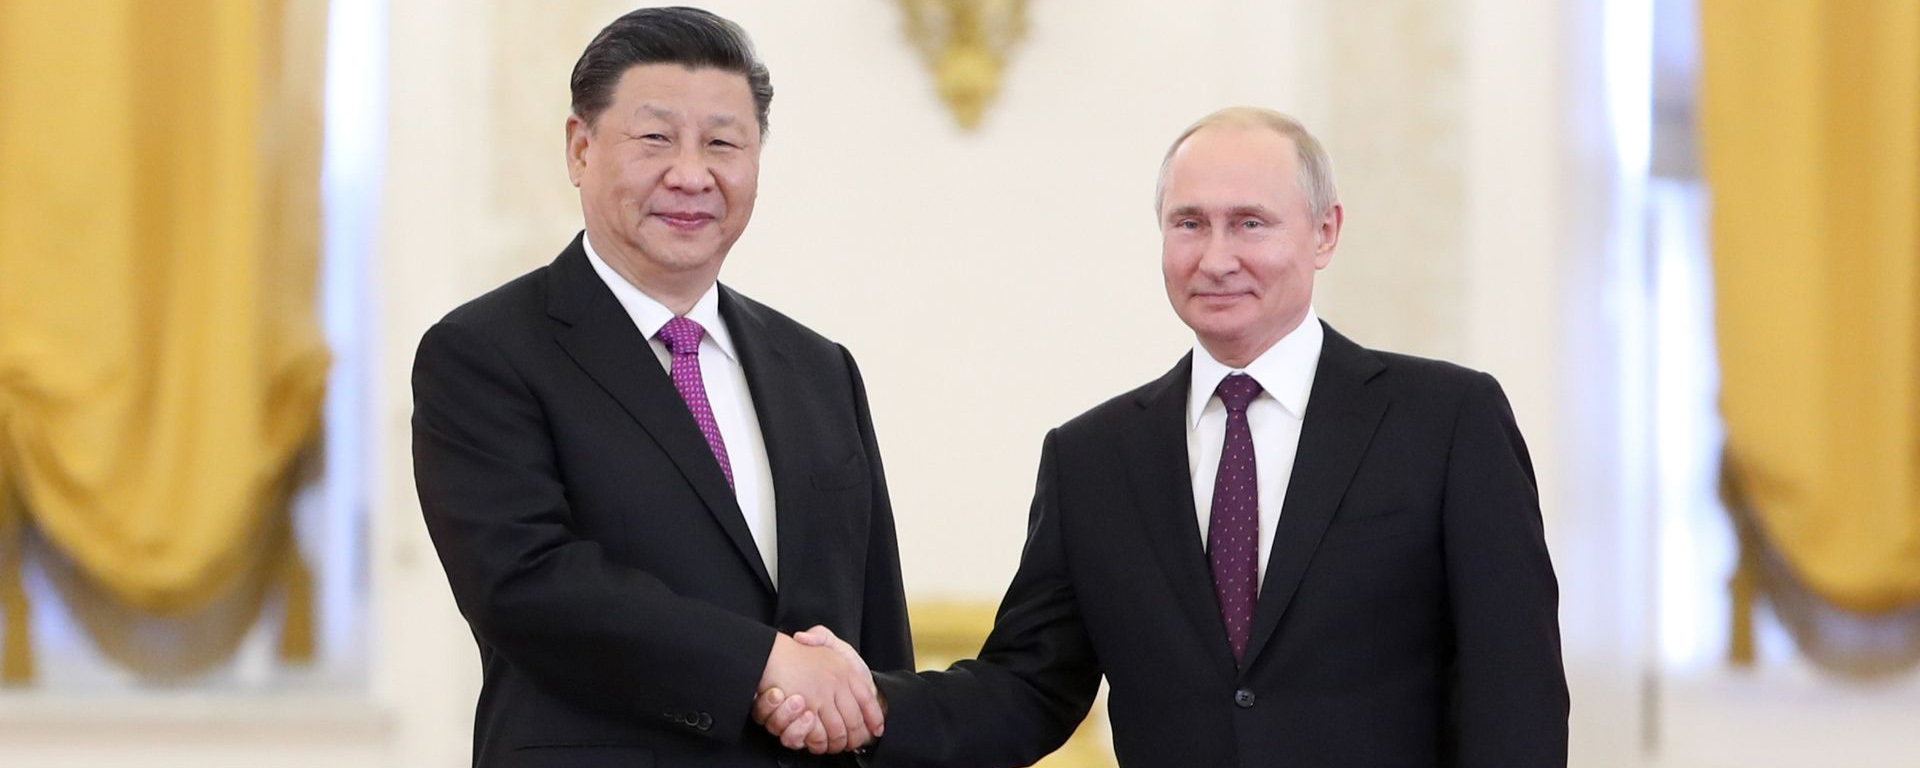 Си Цзиньпин: Китаю и России нужно наращивать объем и качество экономического сотрудничества